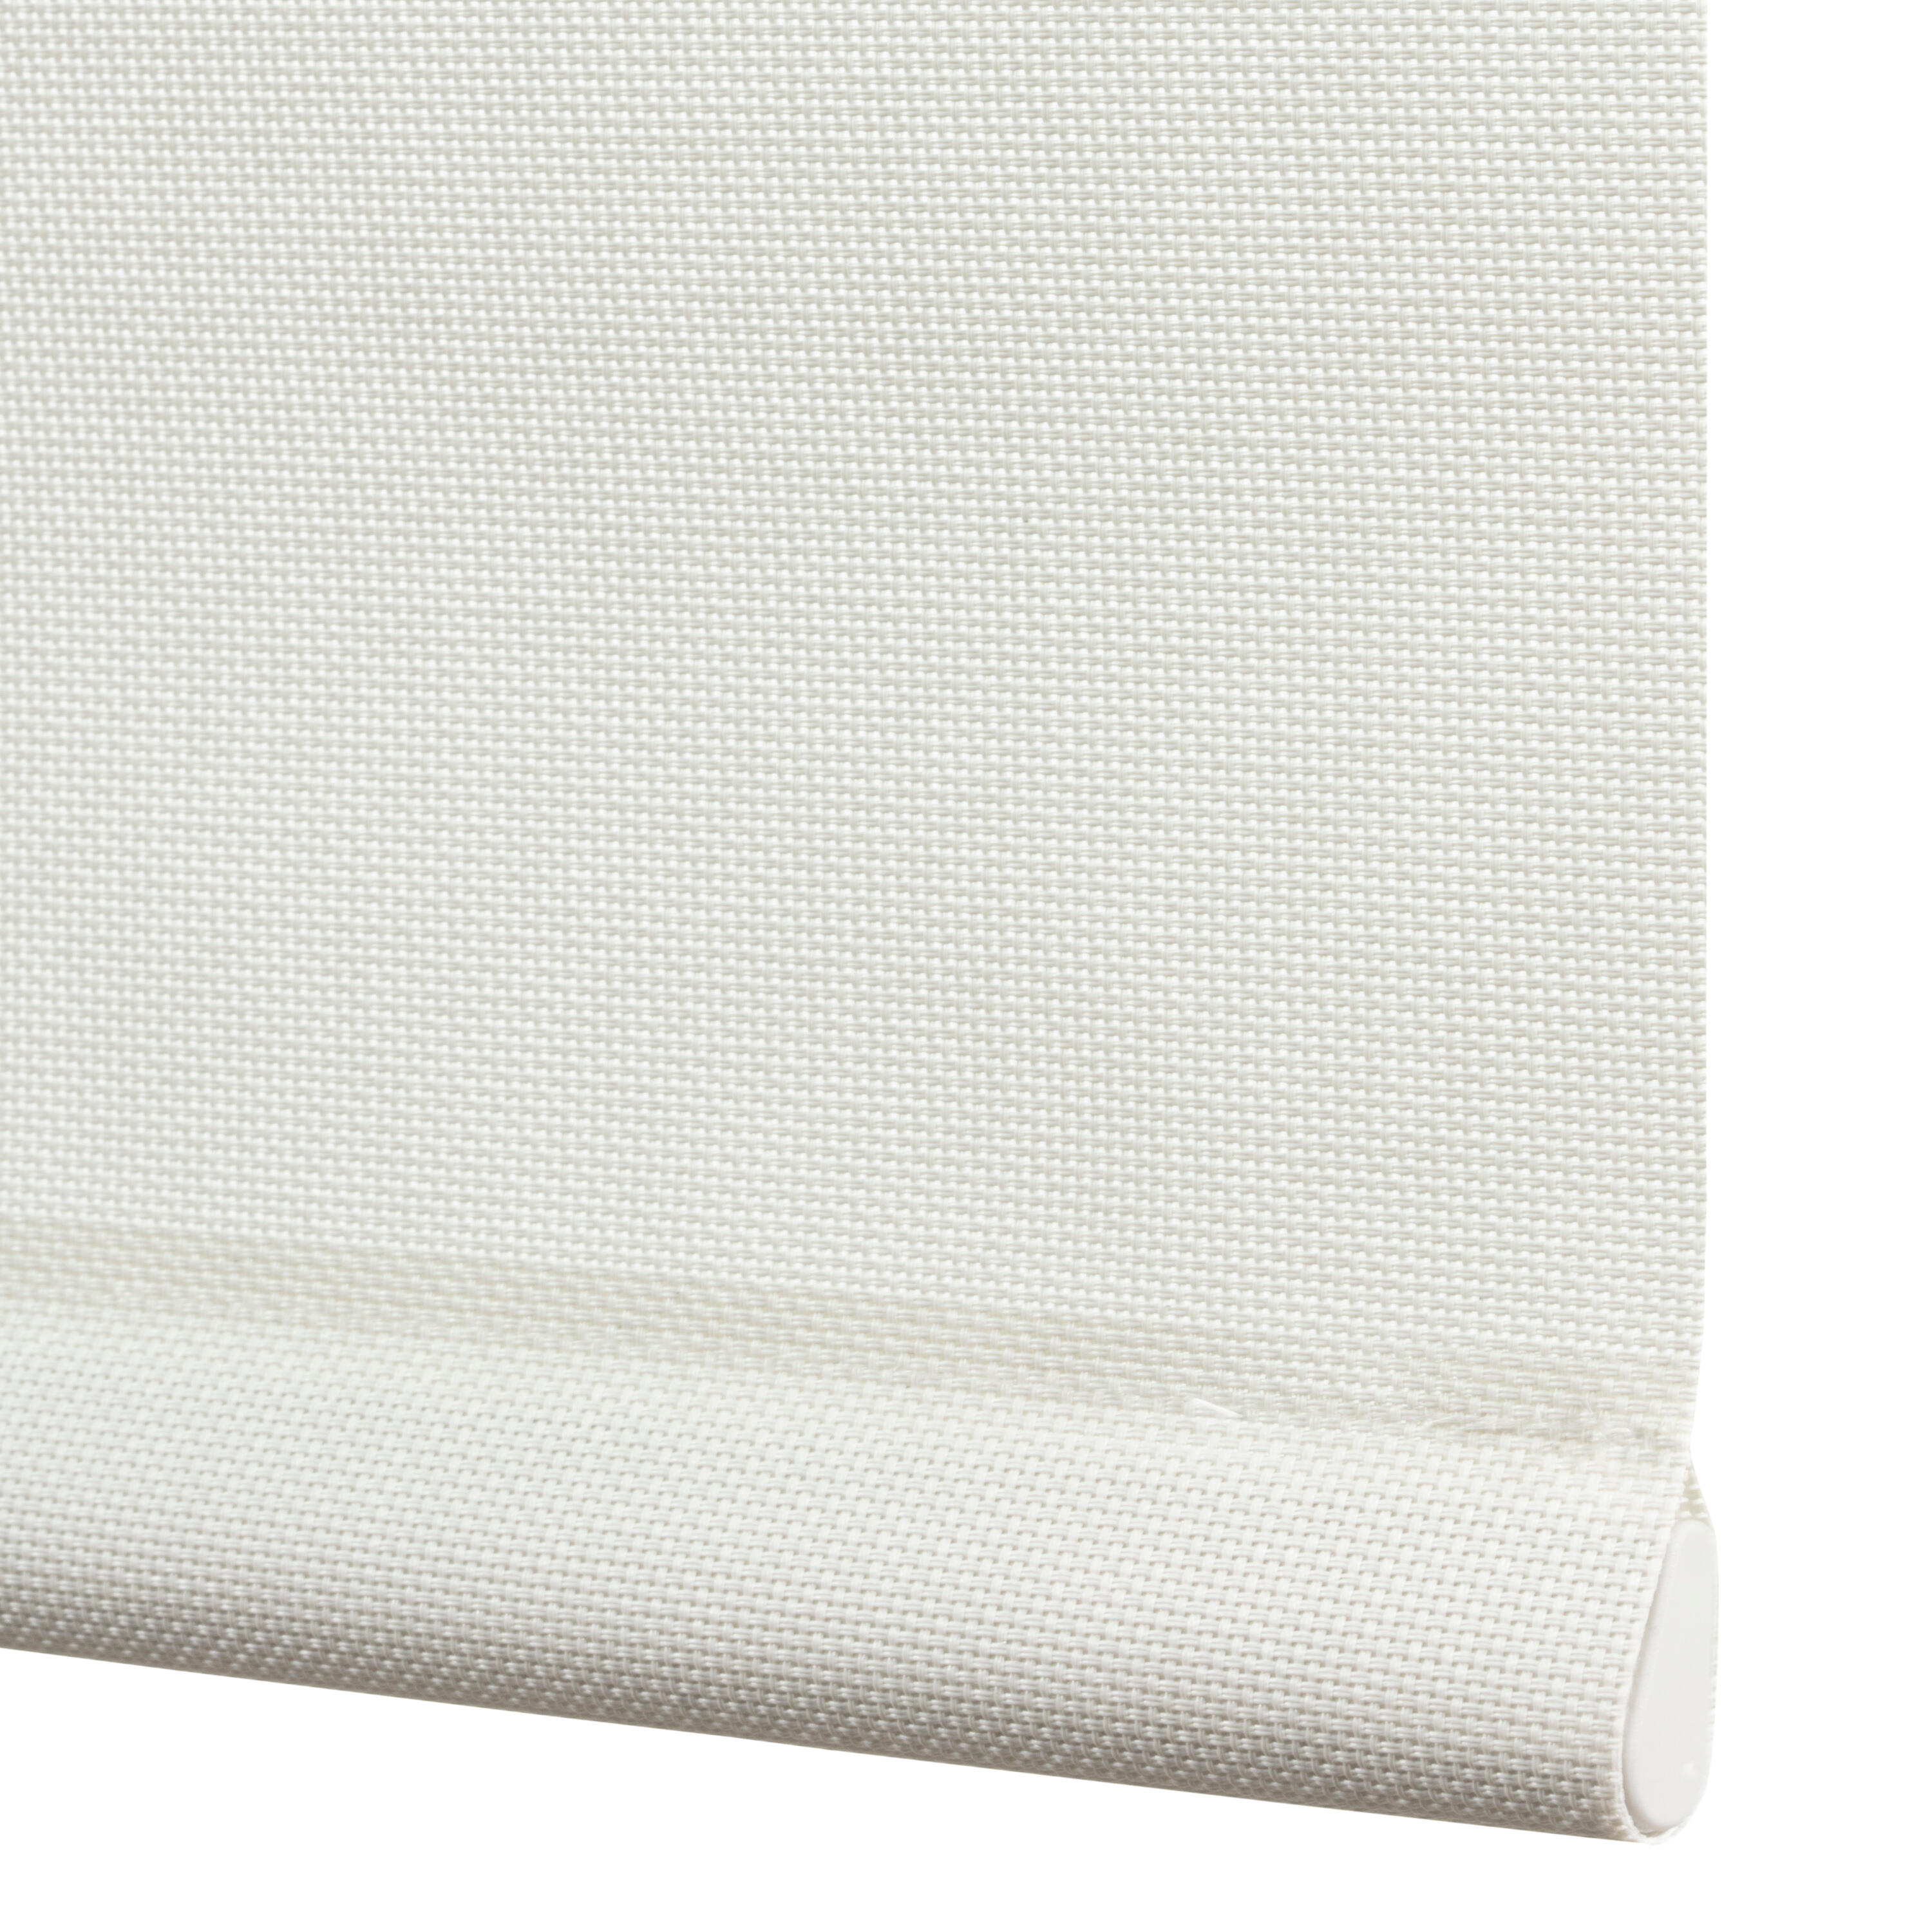 Tenda a rullo filtrante INSPIRE Brasilia bianco 135 x 250 cm - 4